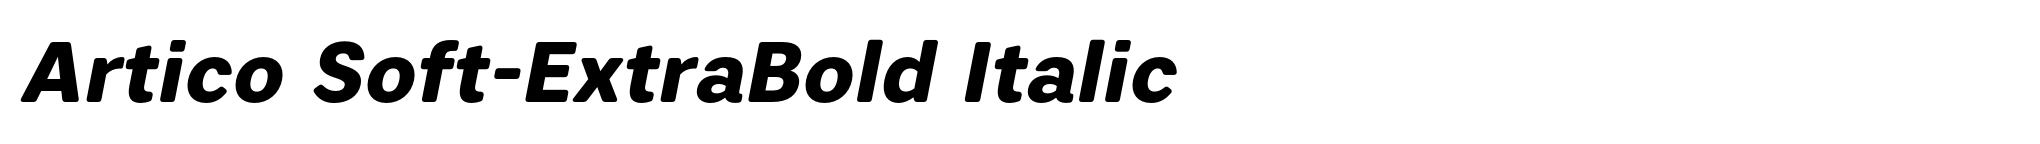 Artico Soft-ExtraBold Italic image